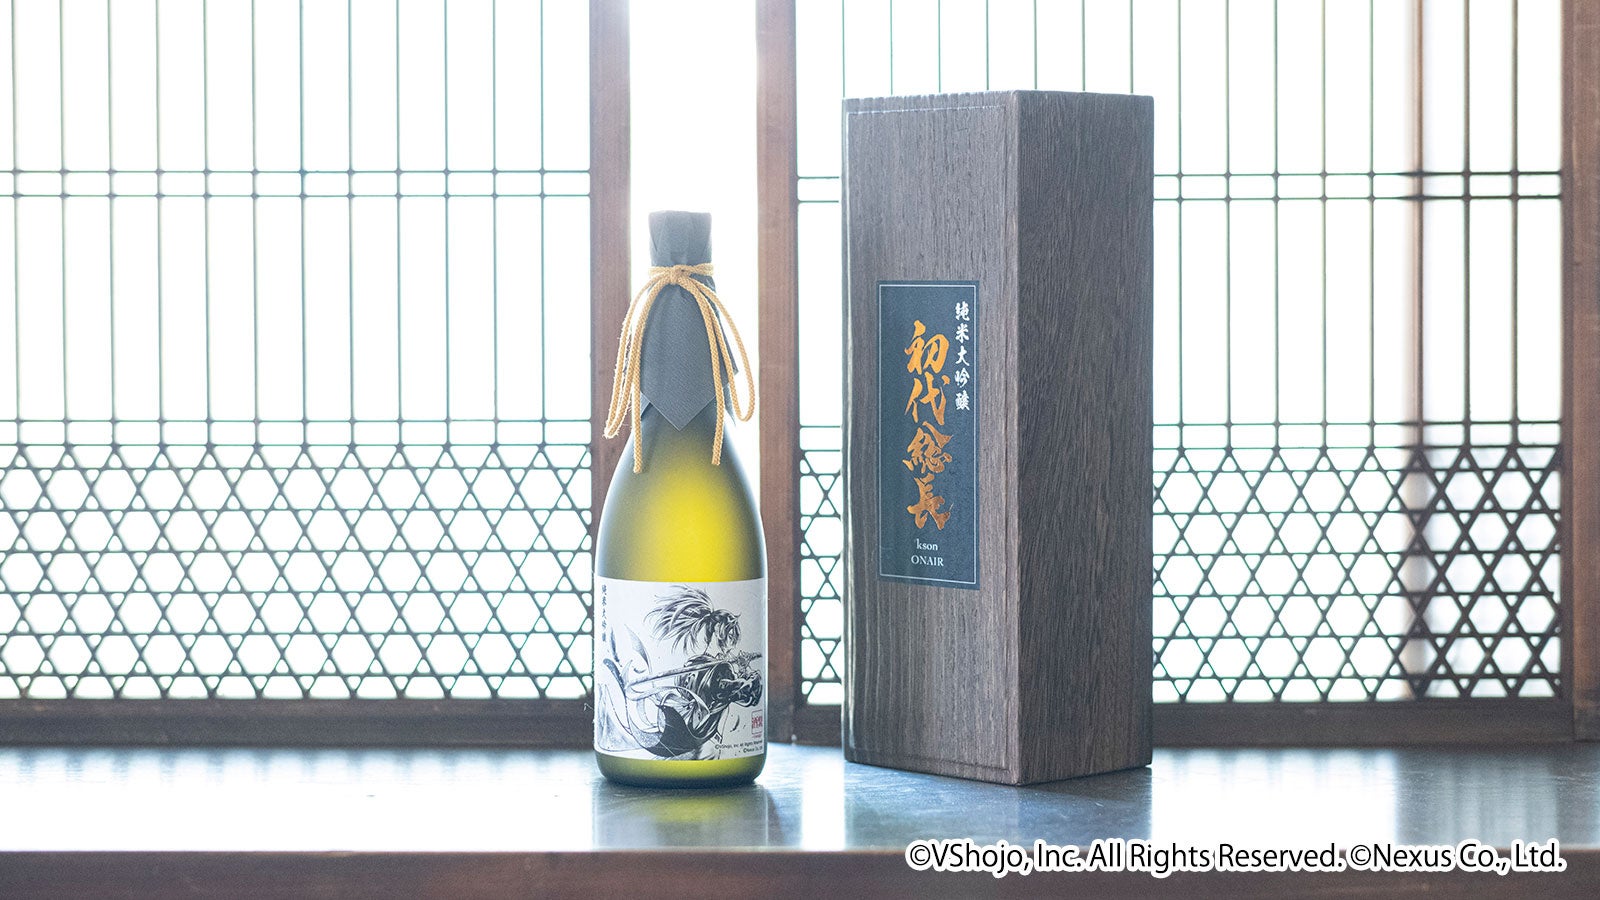 VTuber事務所「VShojo」所属 VTuberタレント「kson(ケイソン)」の日本酒、「純米大吟醸 初代総長」が発売決定!